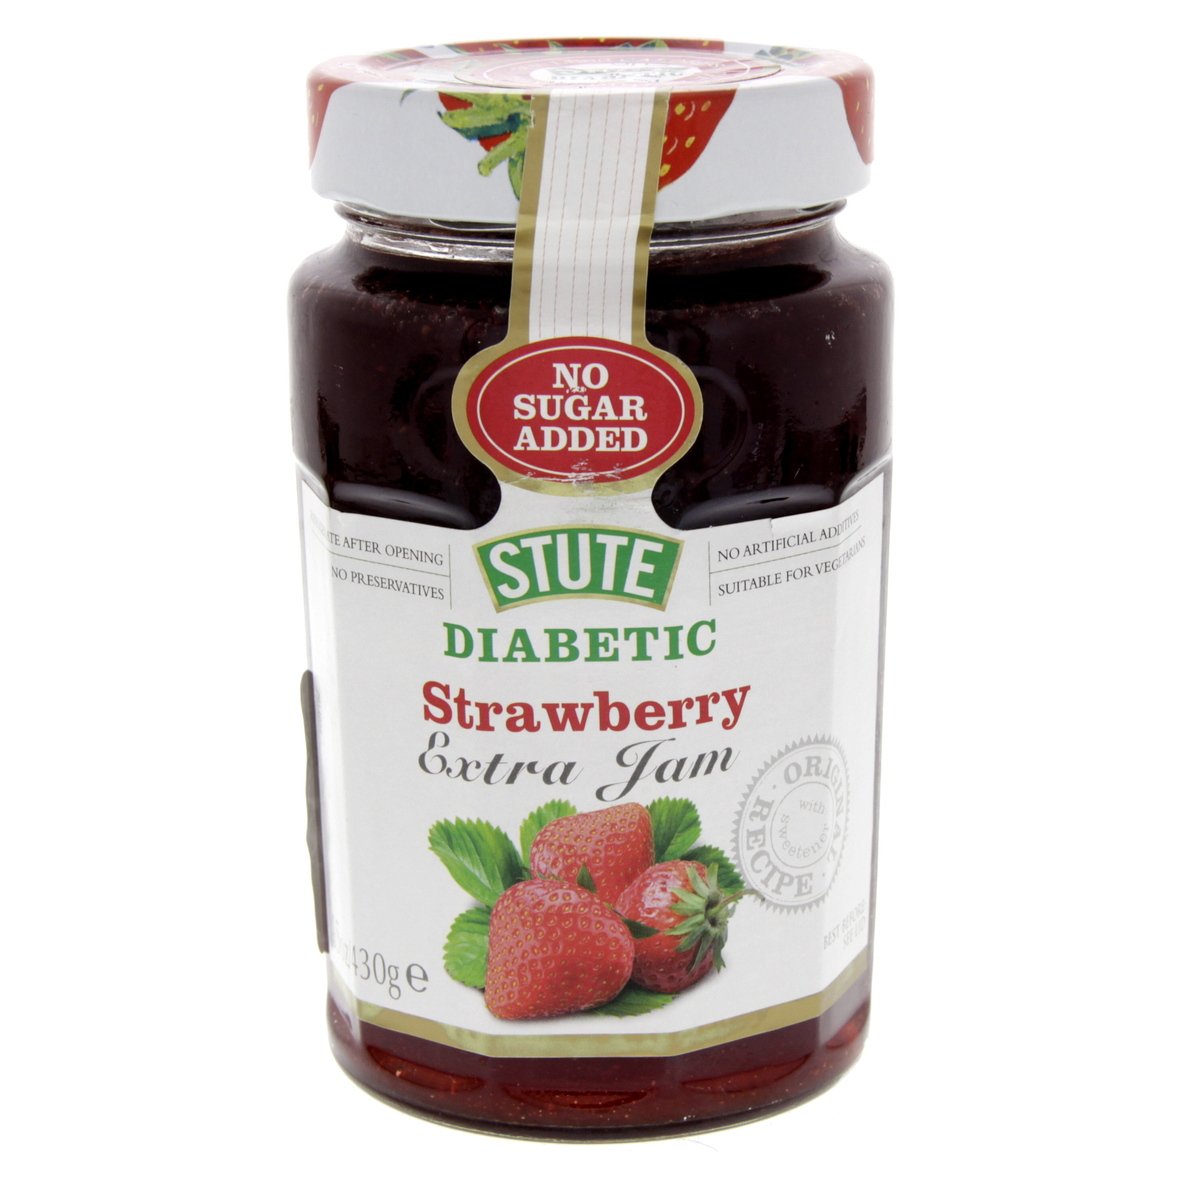 Buy Stute Diabetic Strawberry Extra Jam 430 g Online at Best Price | Jams & Preserves | Lulu UAE in Saudi Arabia